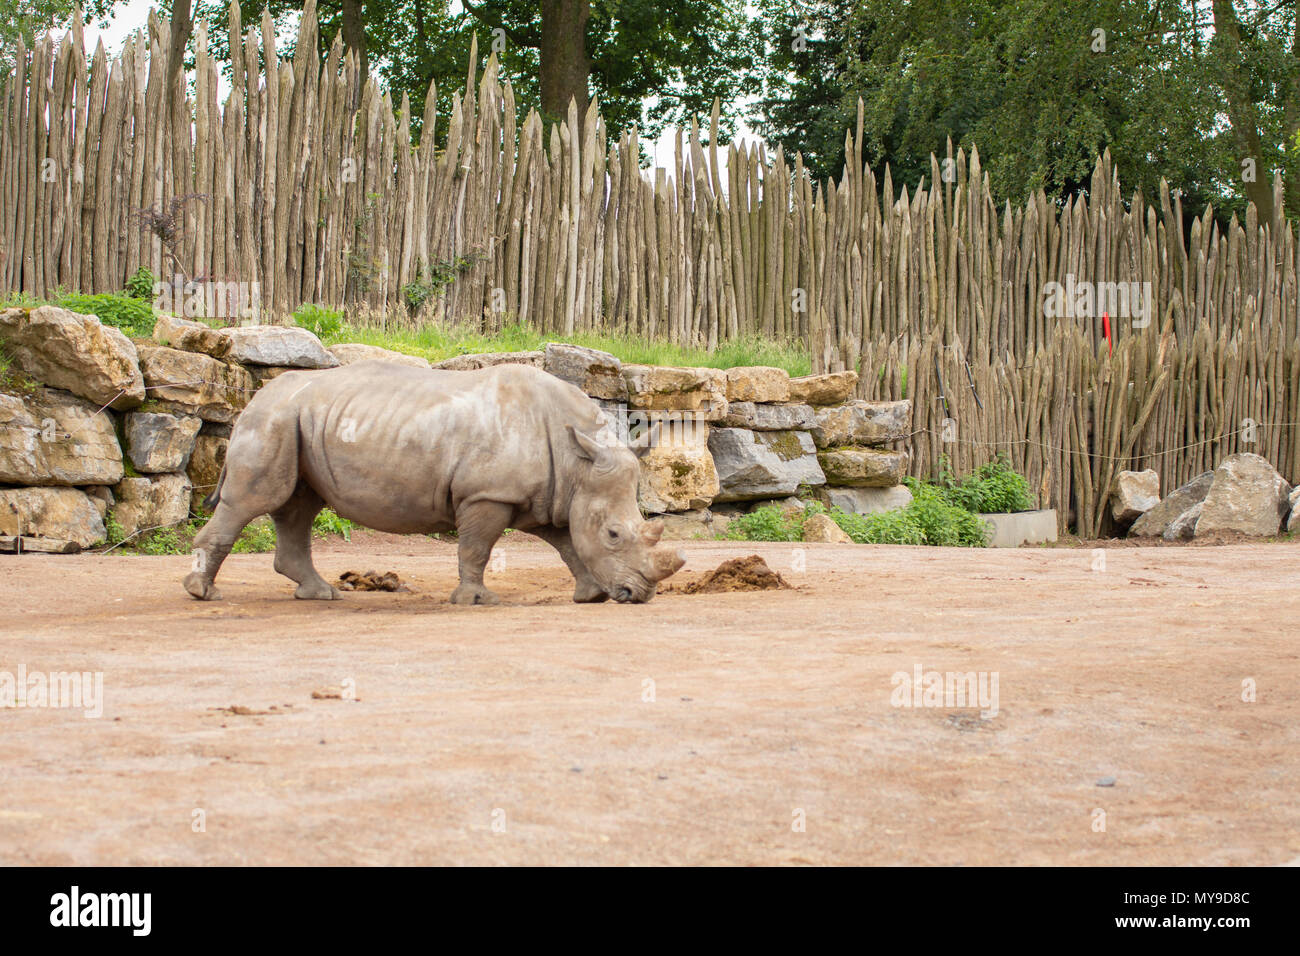 Rhino in Pairi Daiza zoo,Belgium Stock Photo